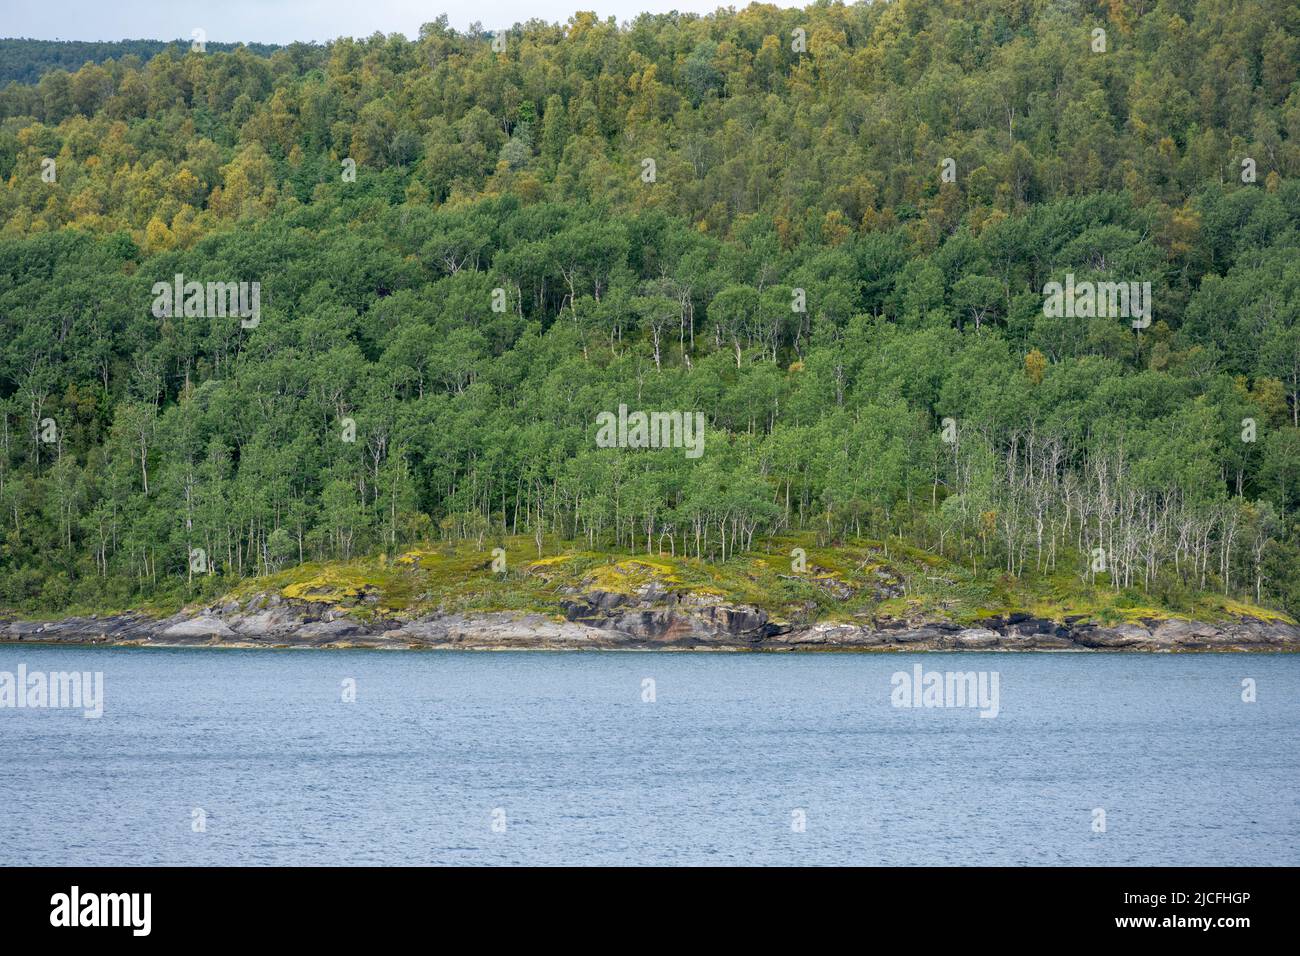 Norway, Troms og Finnmark, forest near Finnsnes. Stock Photo